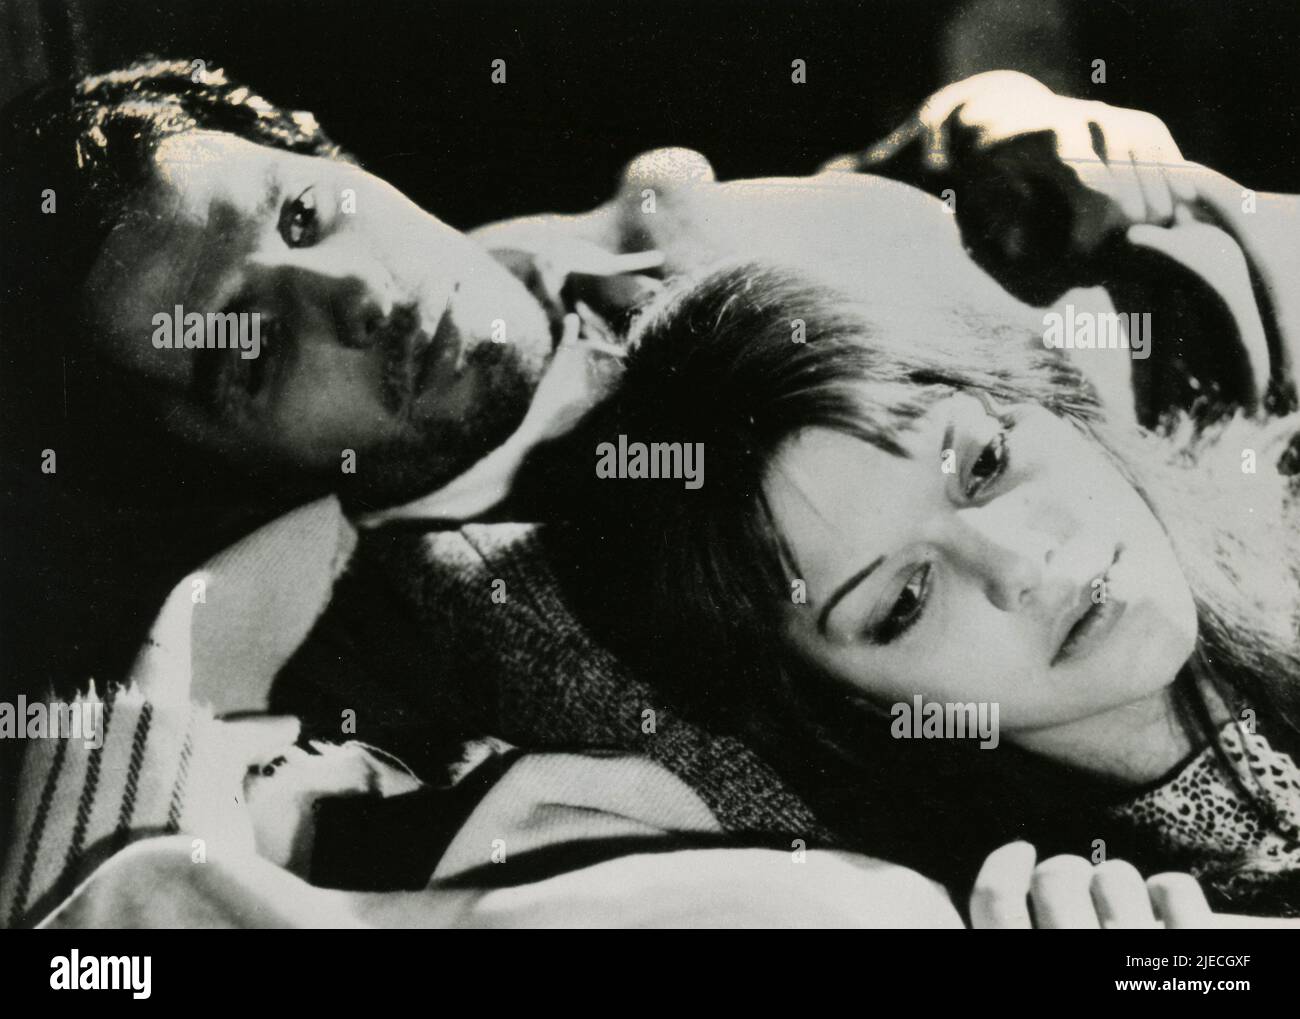 L'attore italiano Giuliano Gemma e l'attrice Tina Aumont nel film Corbari, Italia 1970 Foto Stock